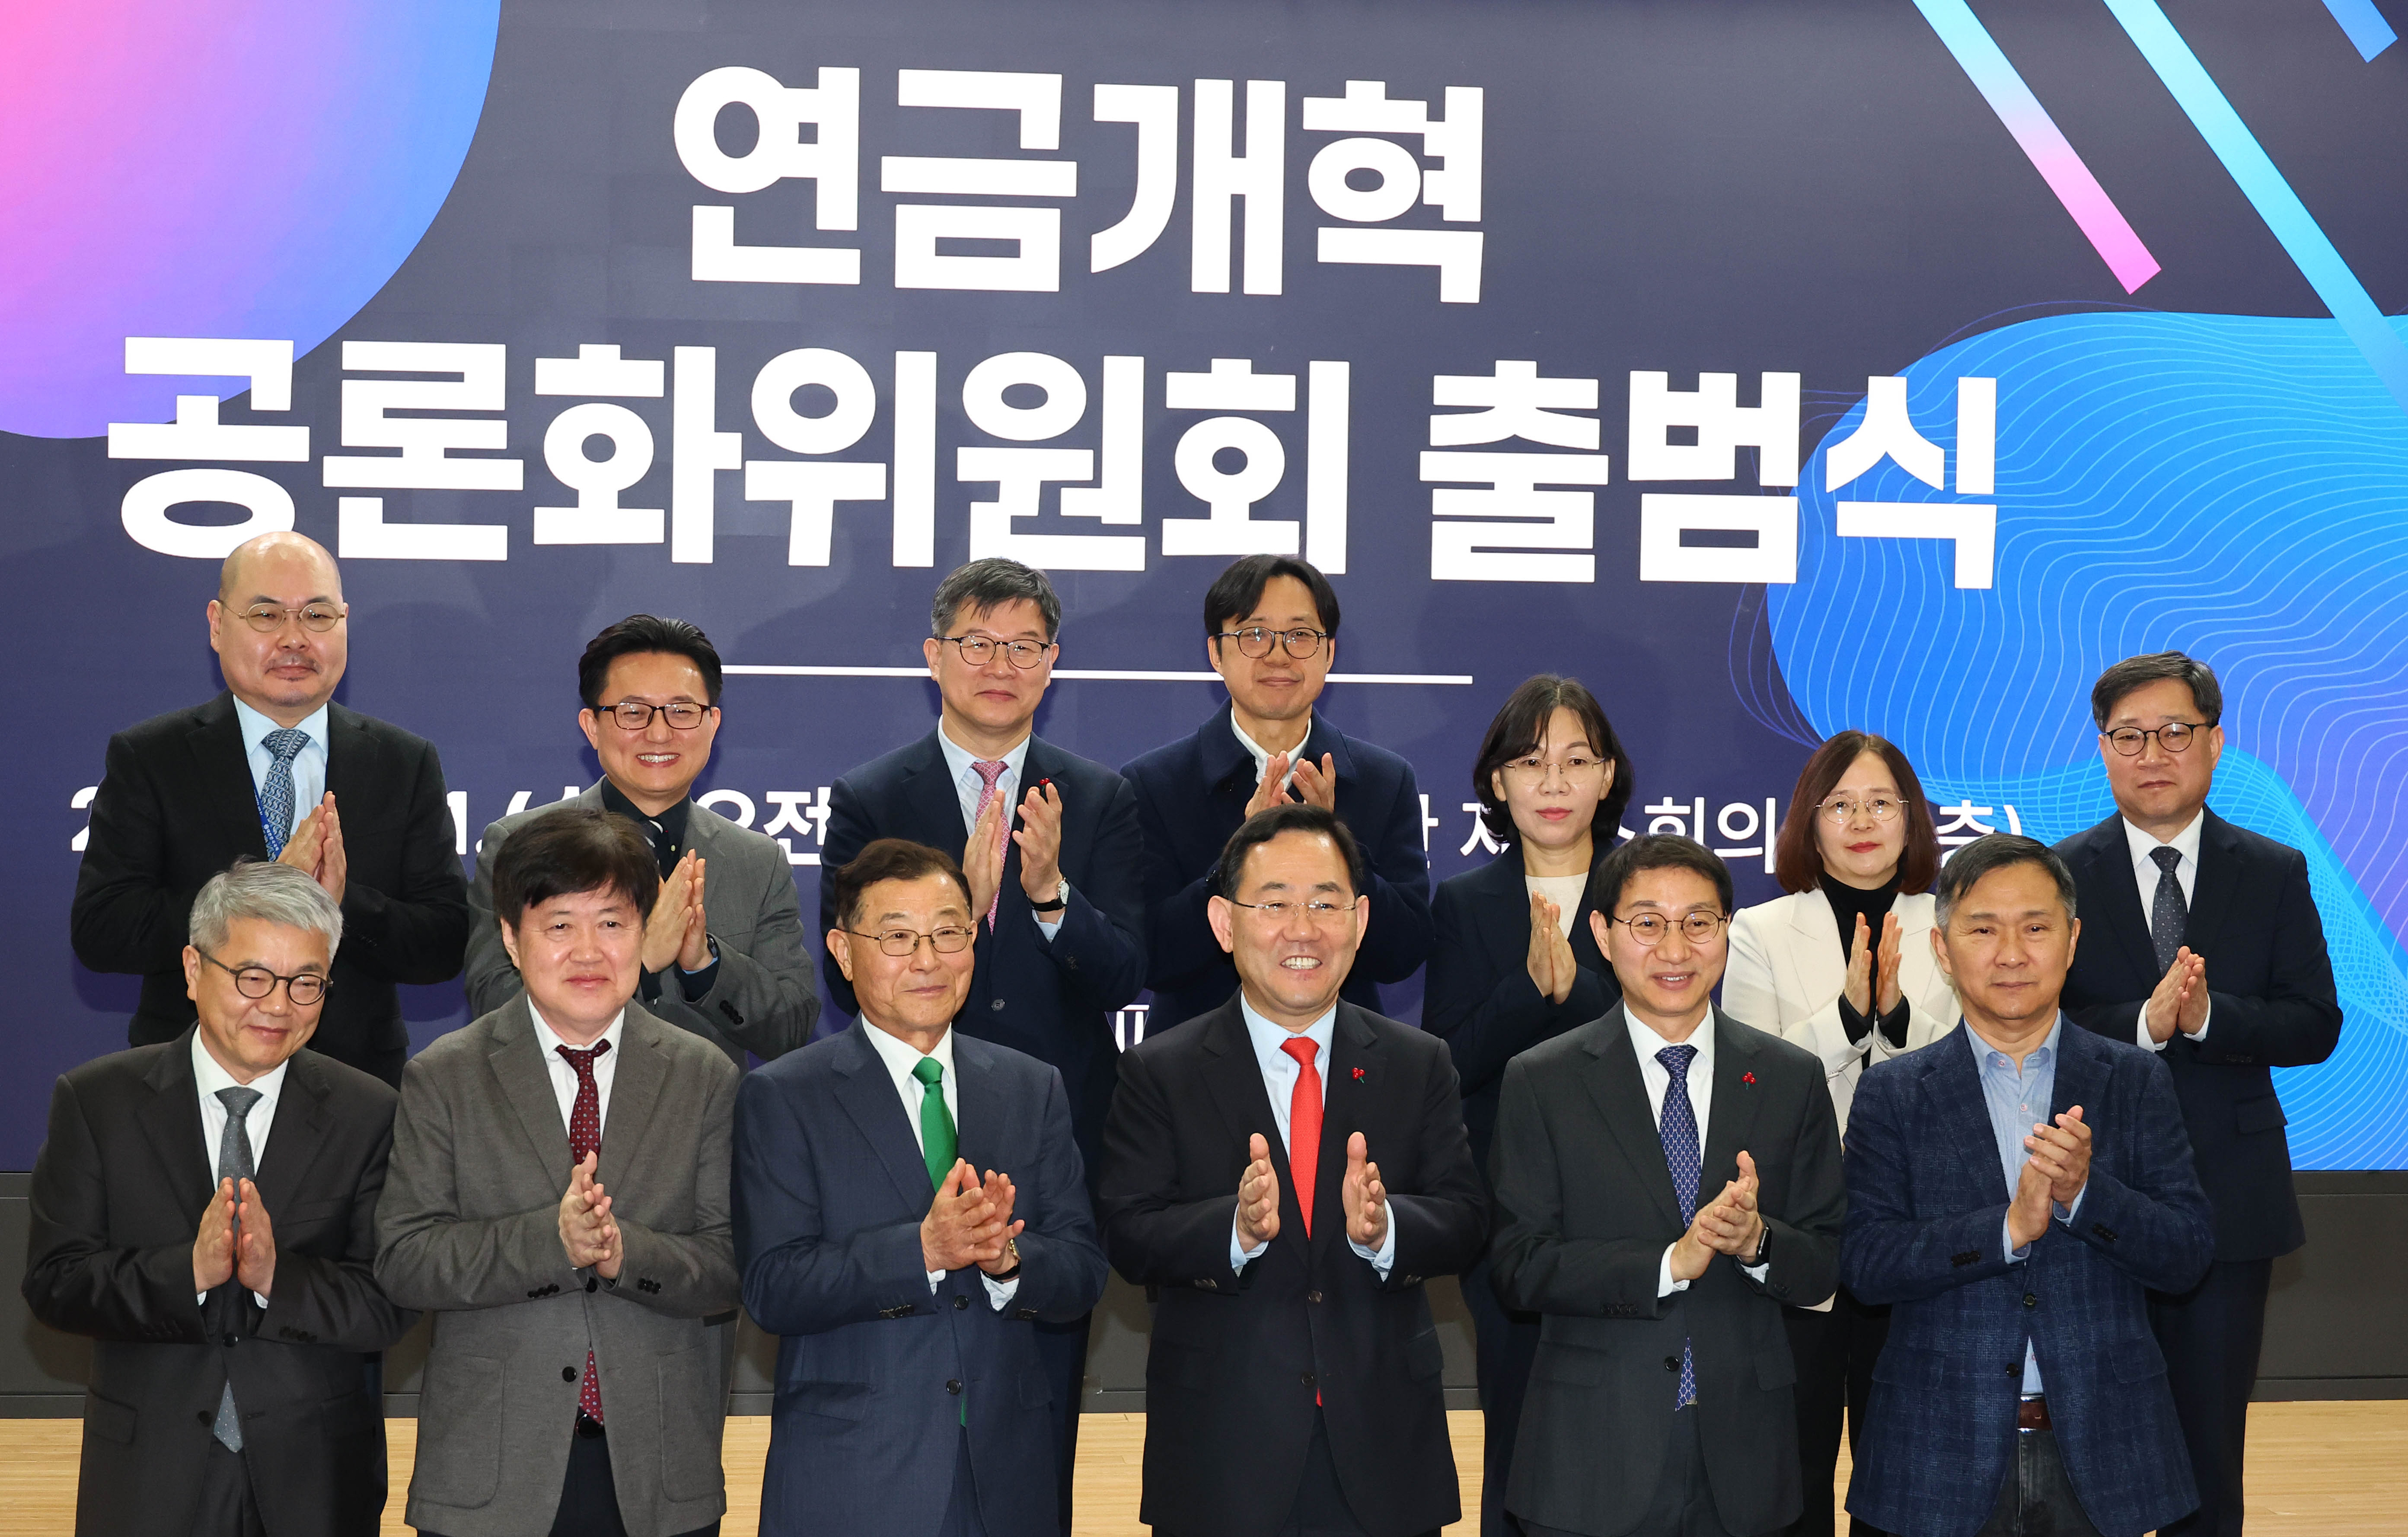 31일 오전 서울 국회 의원회관에서 열린 연금개혁 공론화위원회 출범식이 열렸다. 안주영 전문기자